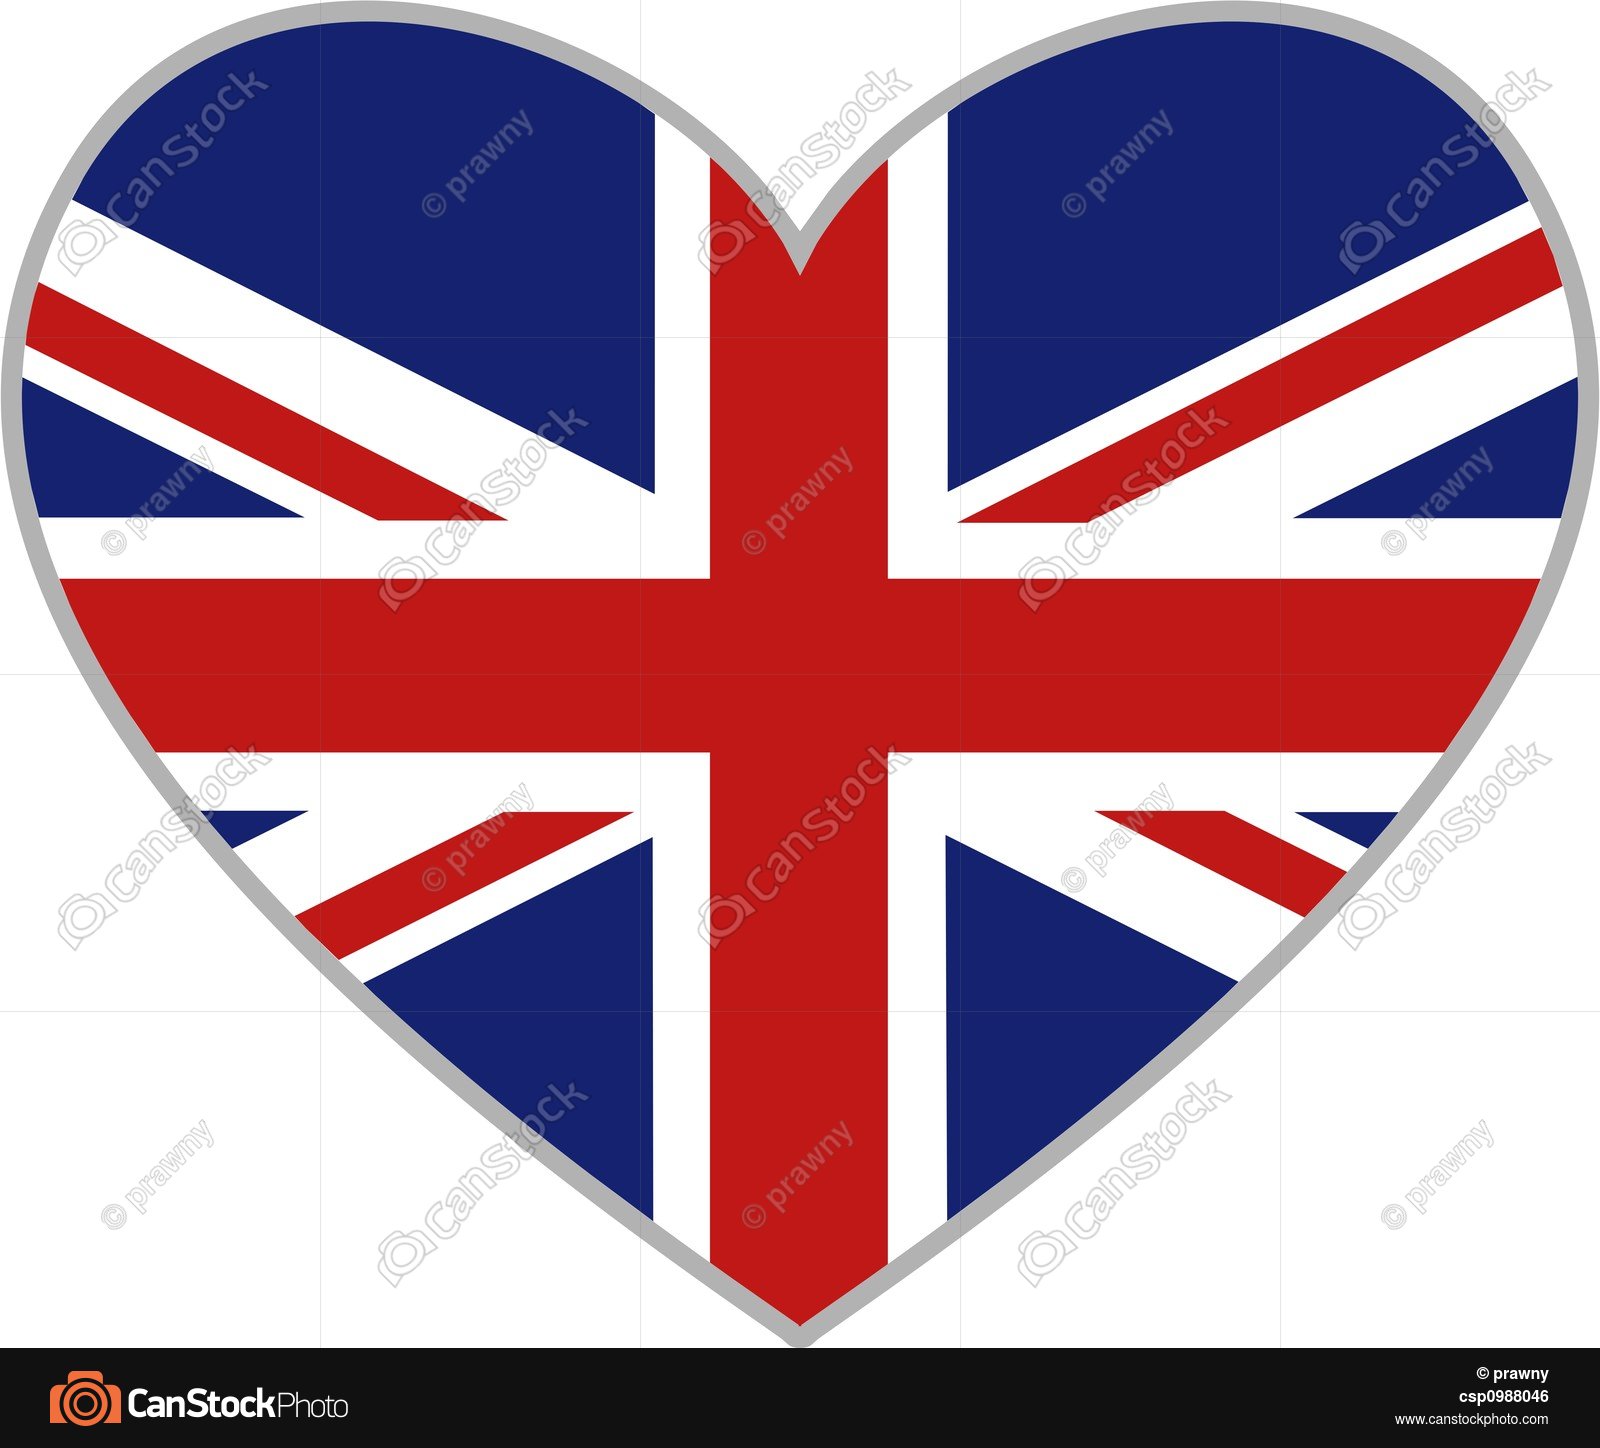 Uk heart. Union jack heart shaped icon isolated on white stock ...